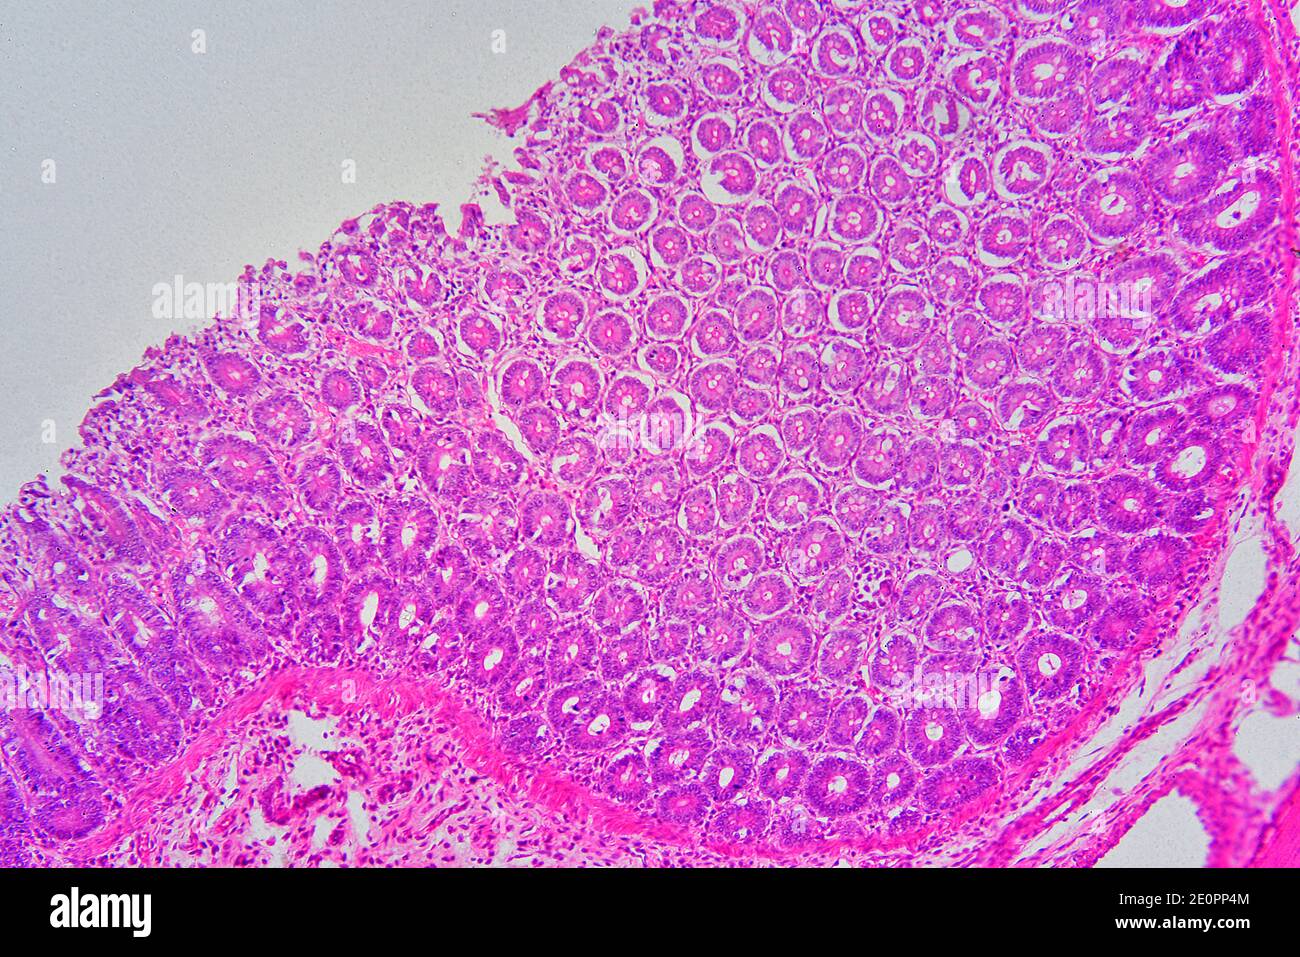 Recto humano mostrando de arriba a abajo: Mucosa con glándulas intestinales, lámina propria y submucosa. X75 a 10 cm de ancho. Foto de stock